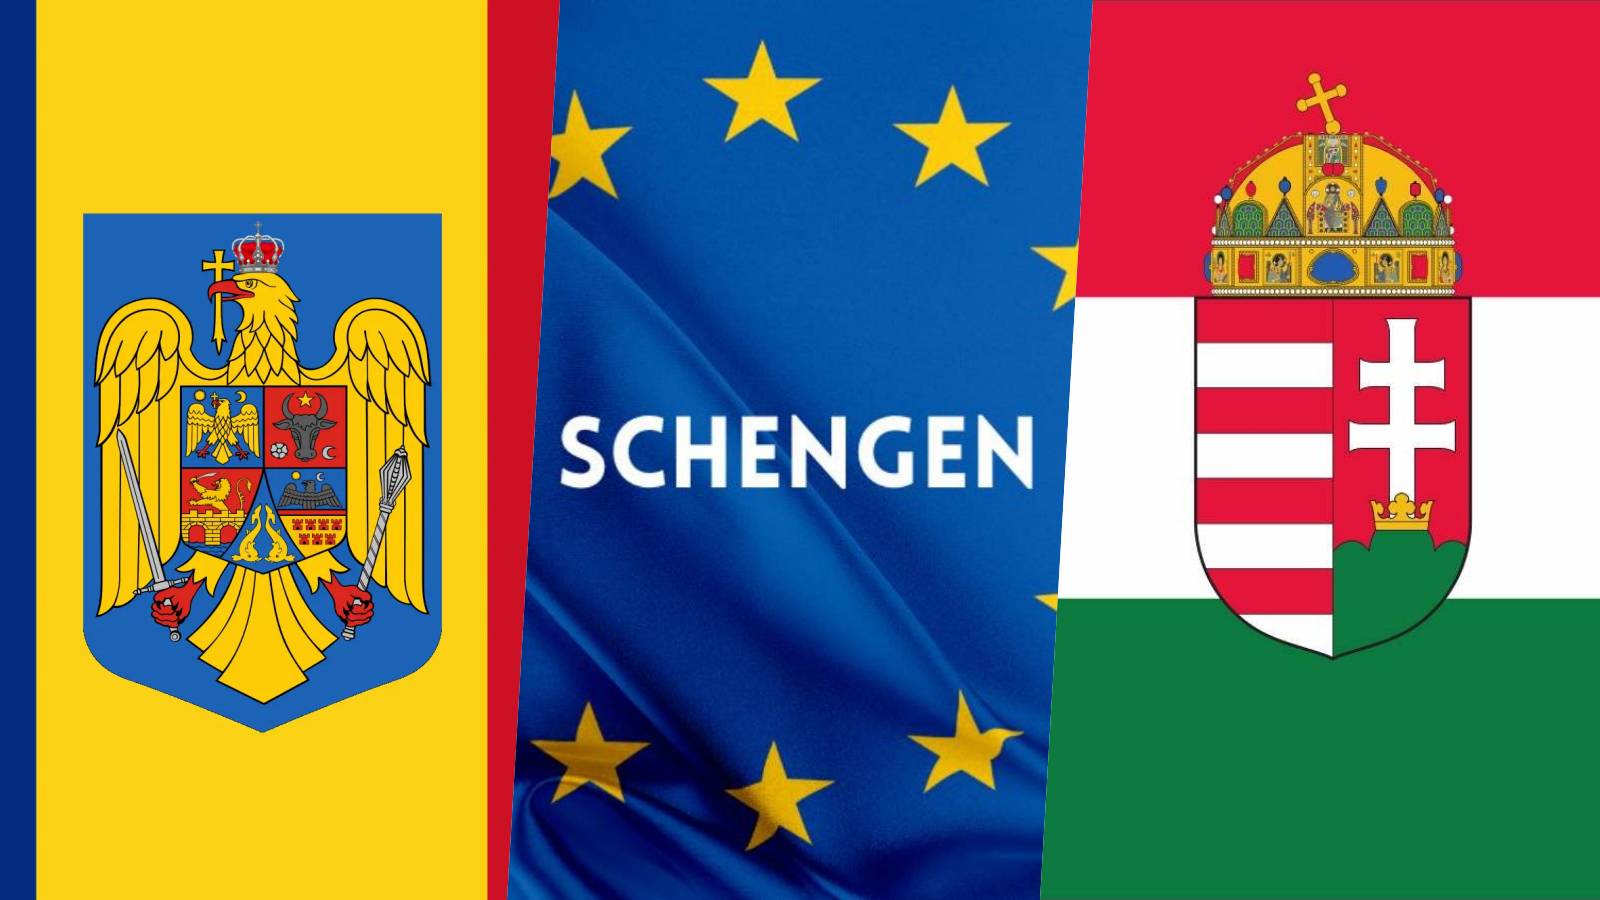 Hungría Anuncios oficiales Medidas de ÚLTIMA HORA Finalización de la adhesión de Rumania a Schengen